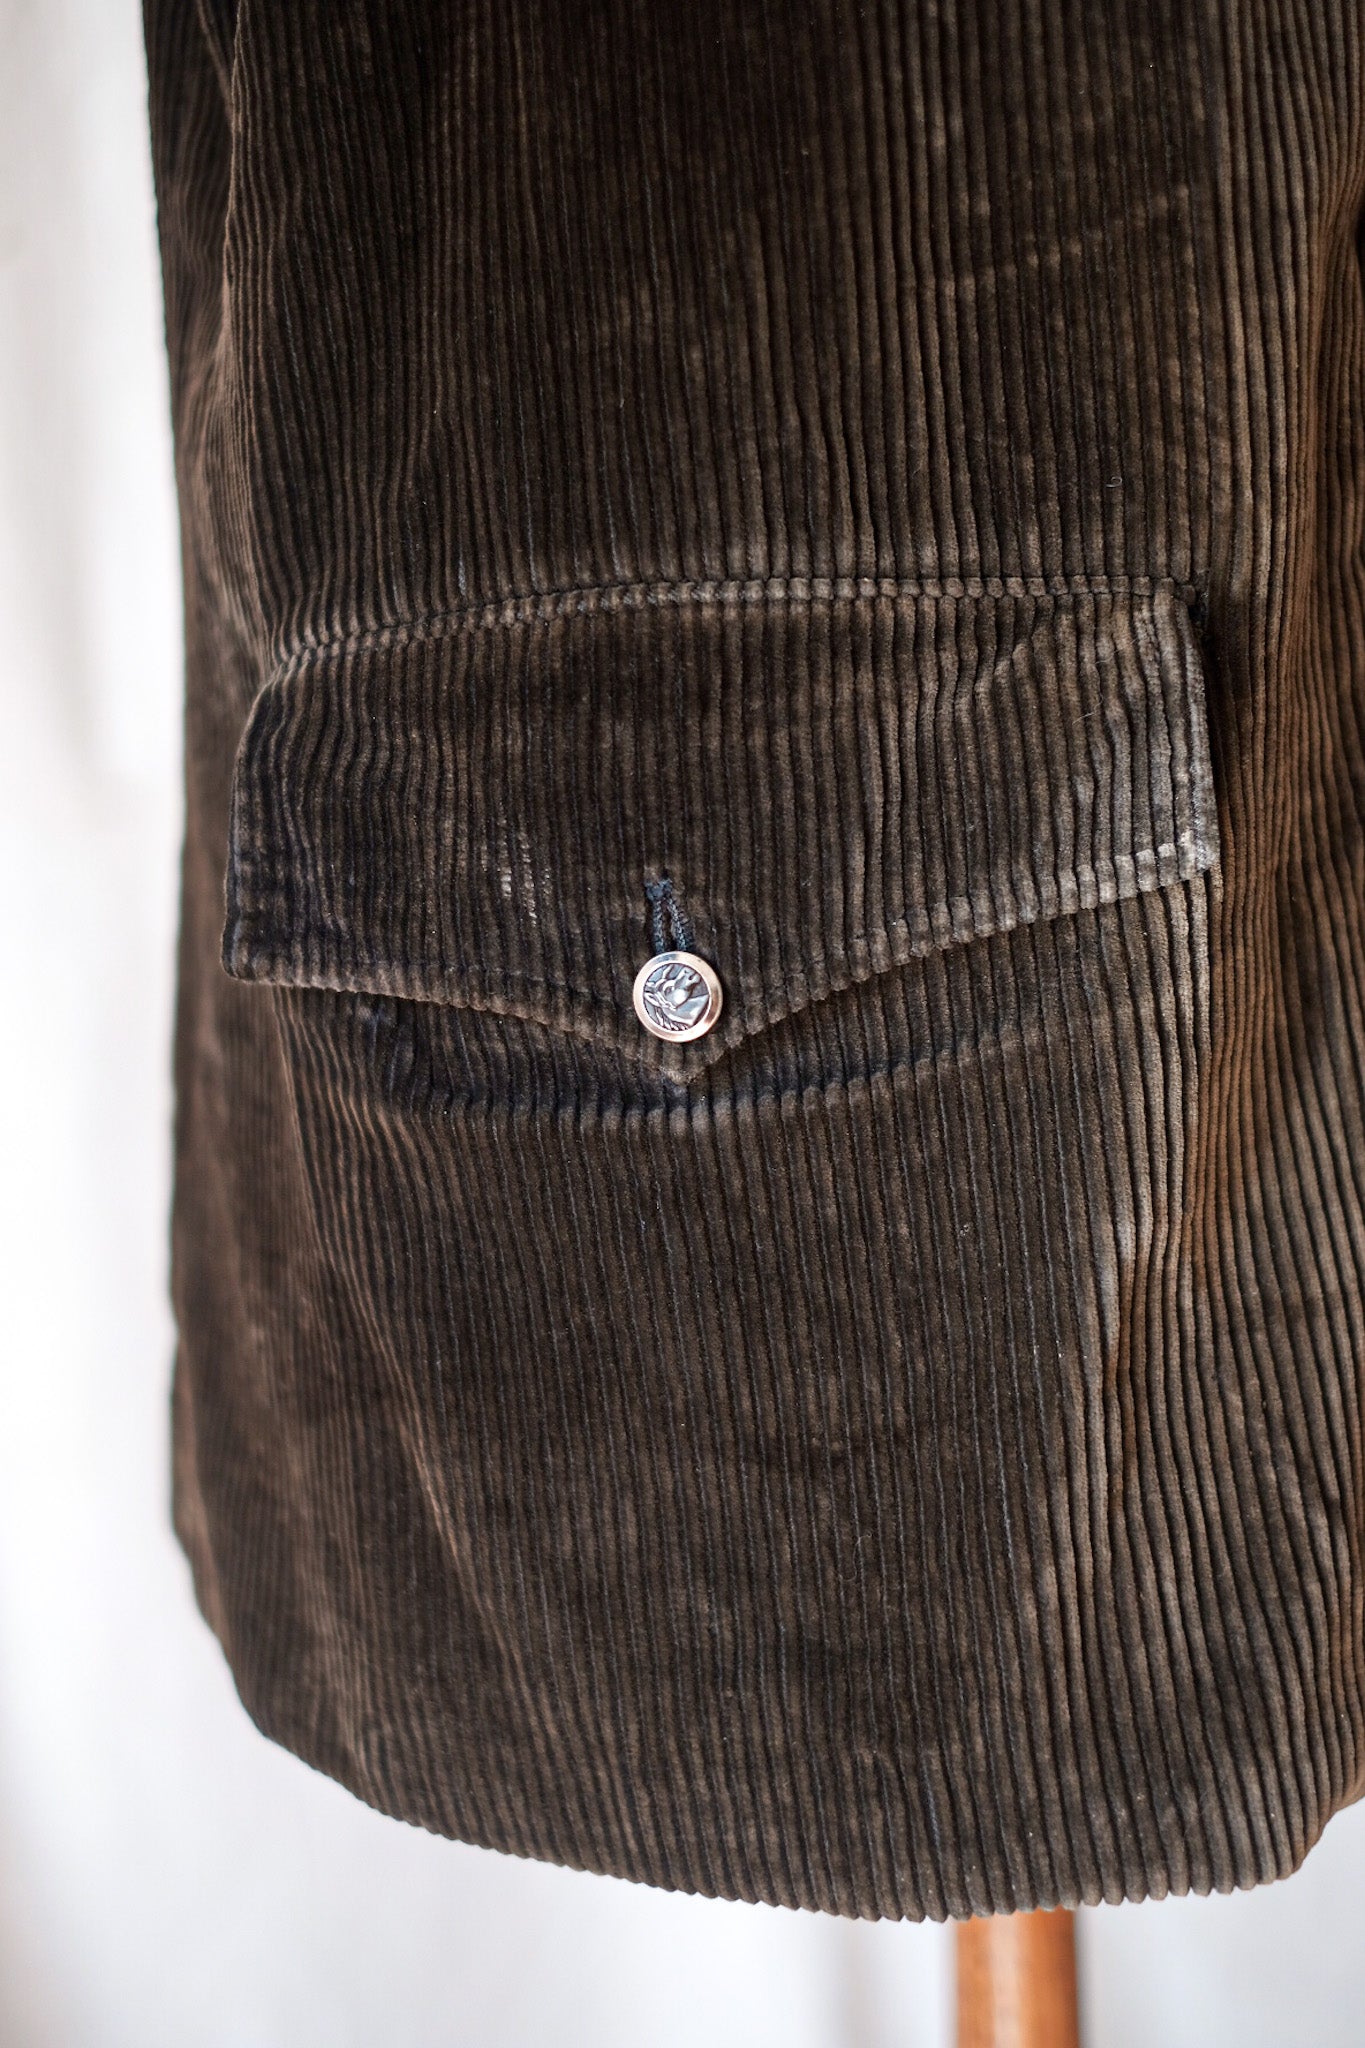 [~ 40 '] 프랑스 빈티지 브라운 코듀로이 게임 키퍼 사냥 재킷